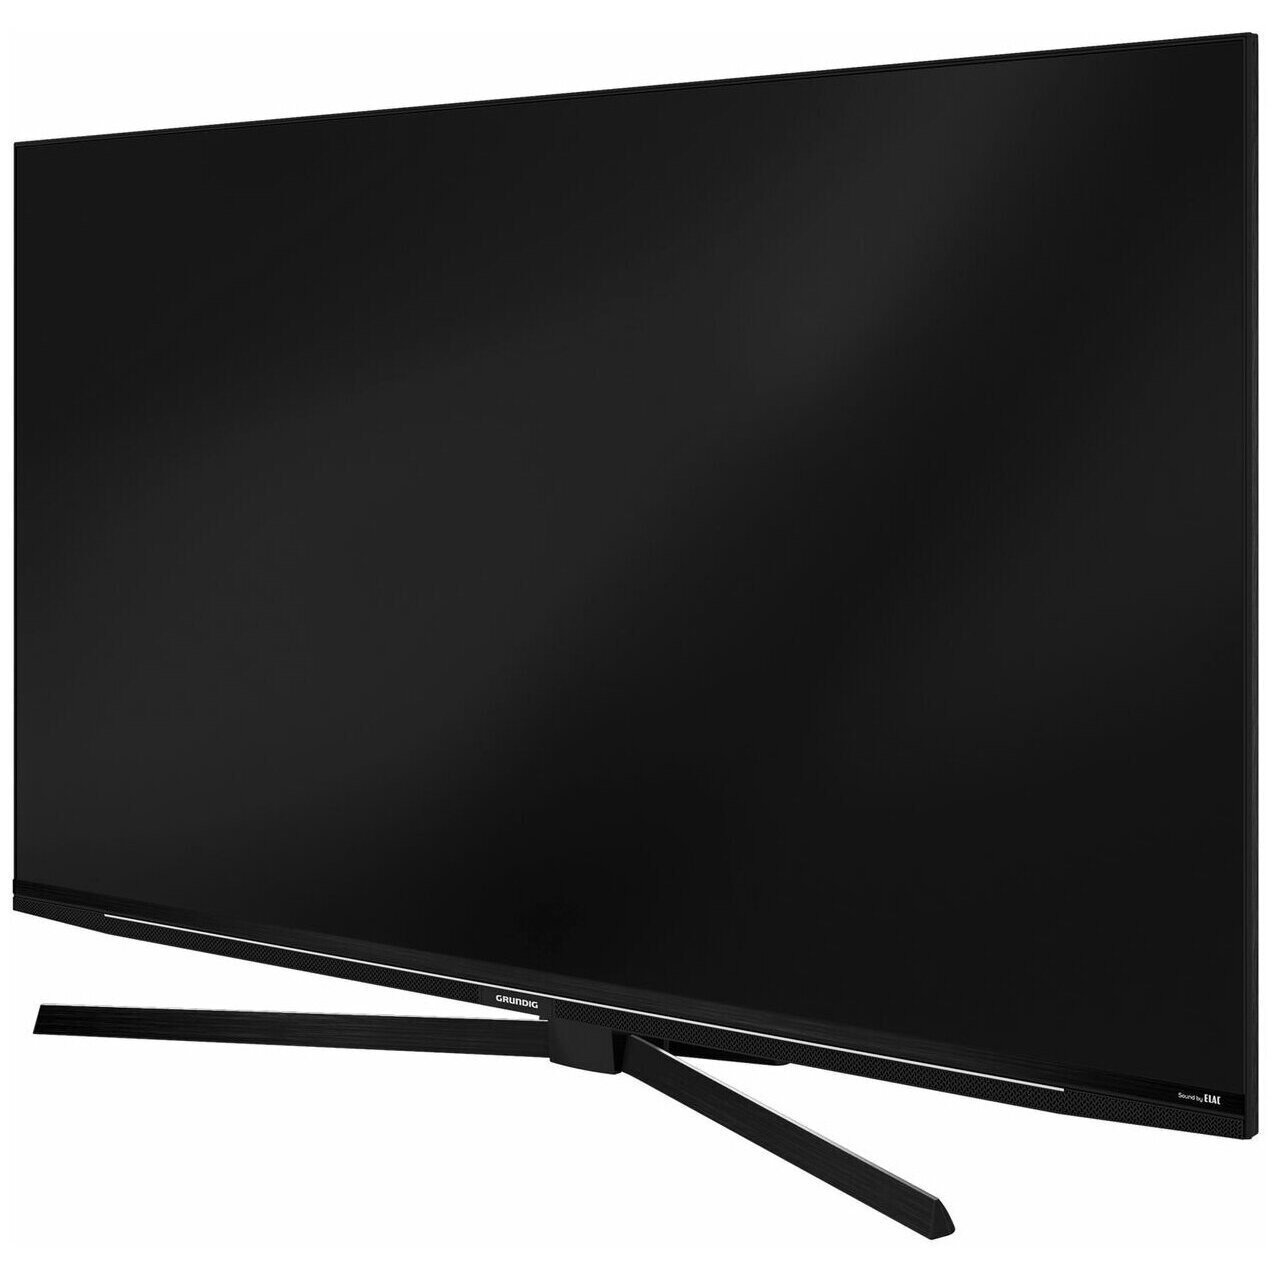 Телевизор Grundig 55 GGU 8960, 55"(140 см), UHD 4K - купить в М.видео, цена на Мегамаркет